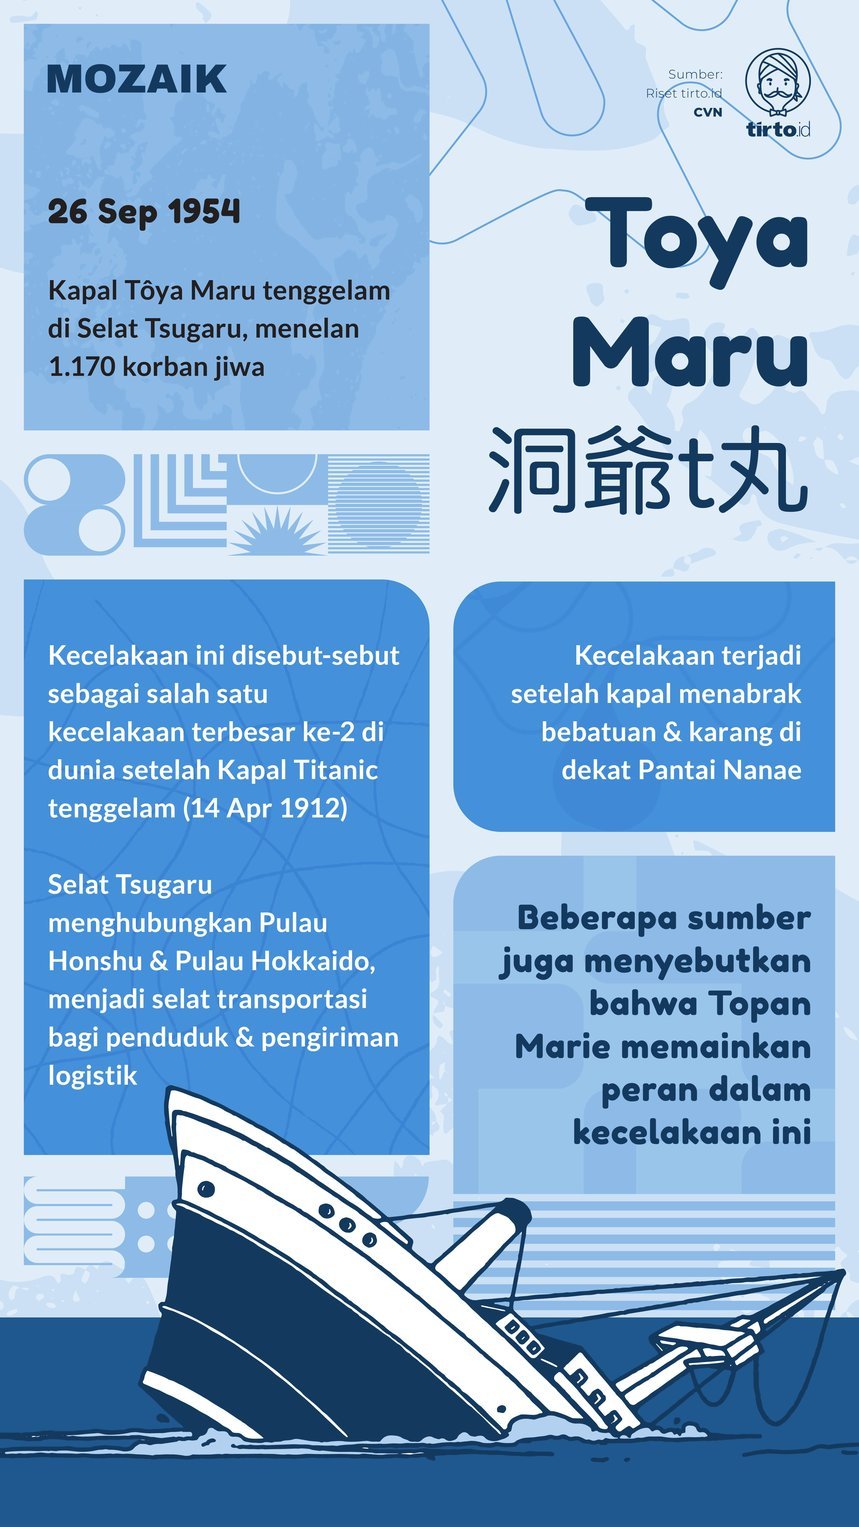 Infografik Mozaik Toya Maru